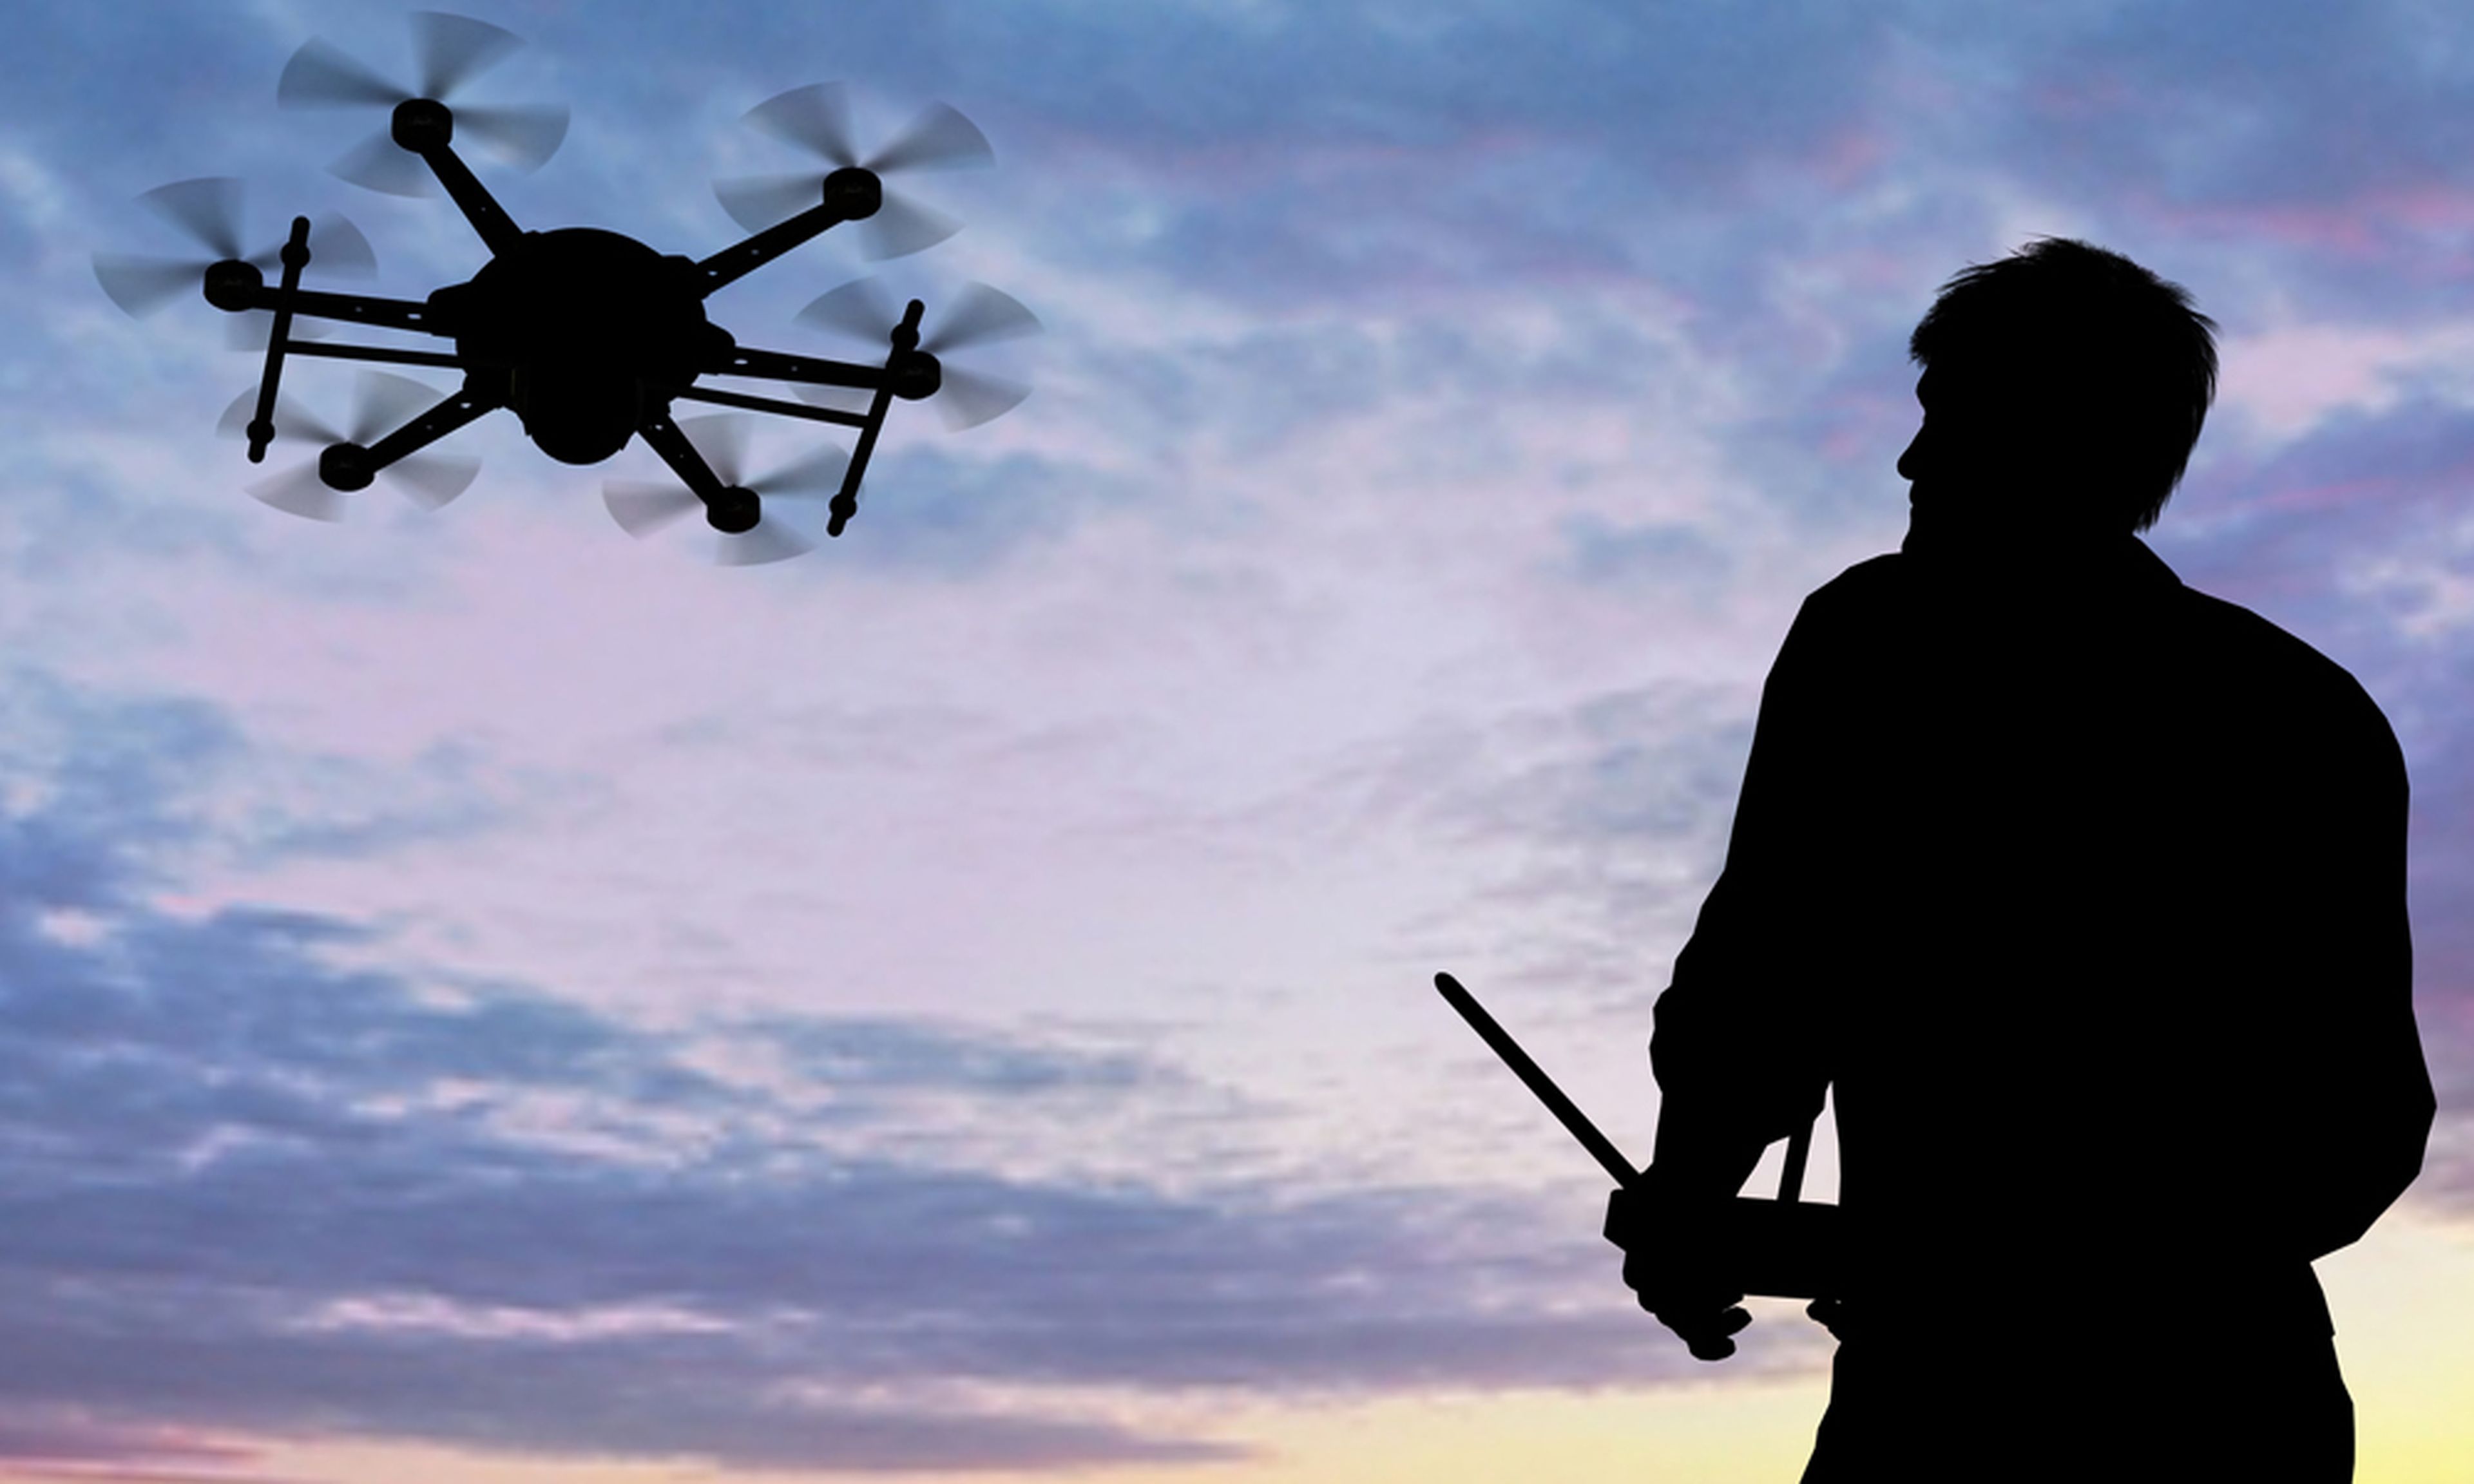 Reino Unido está chocando drones contra aviones